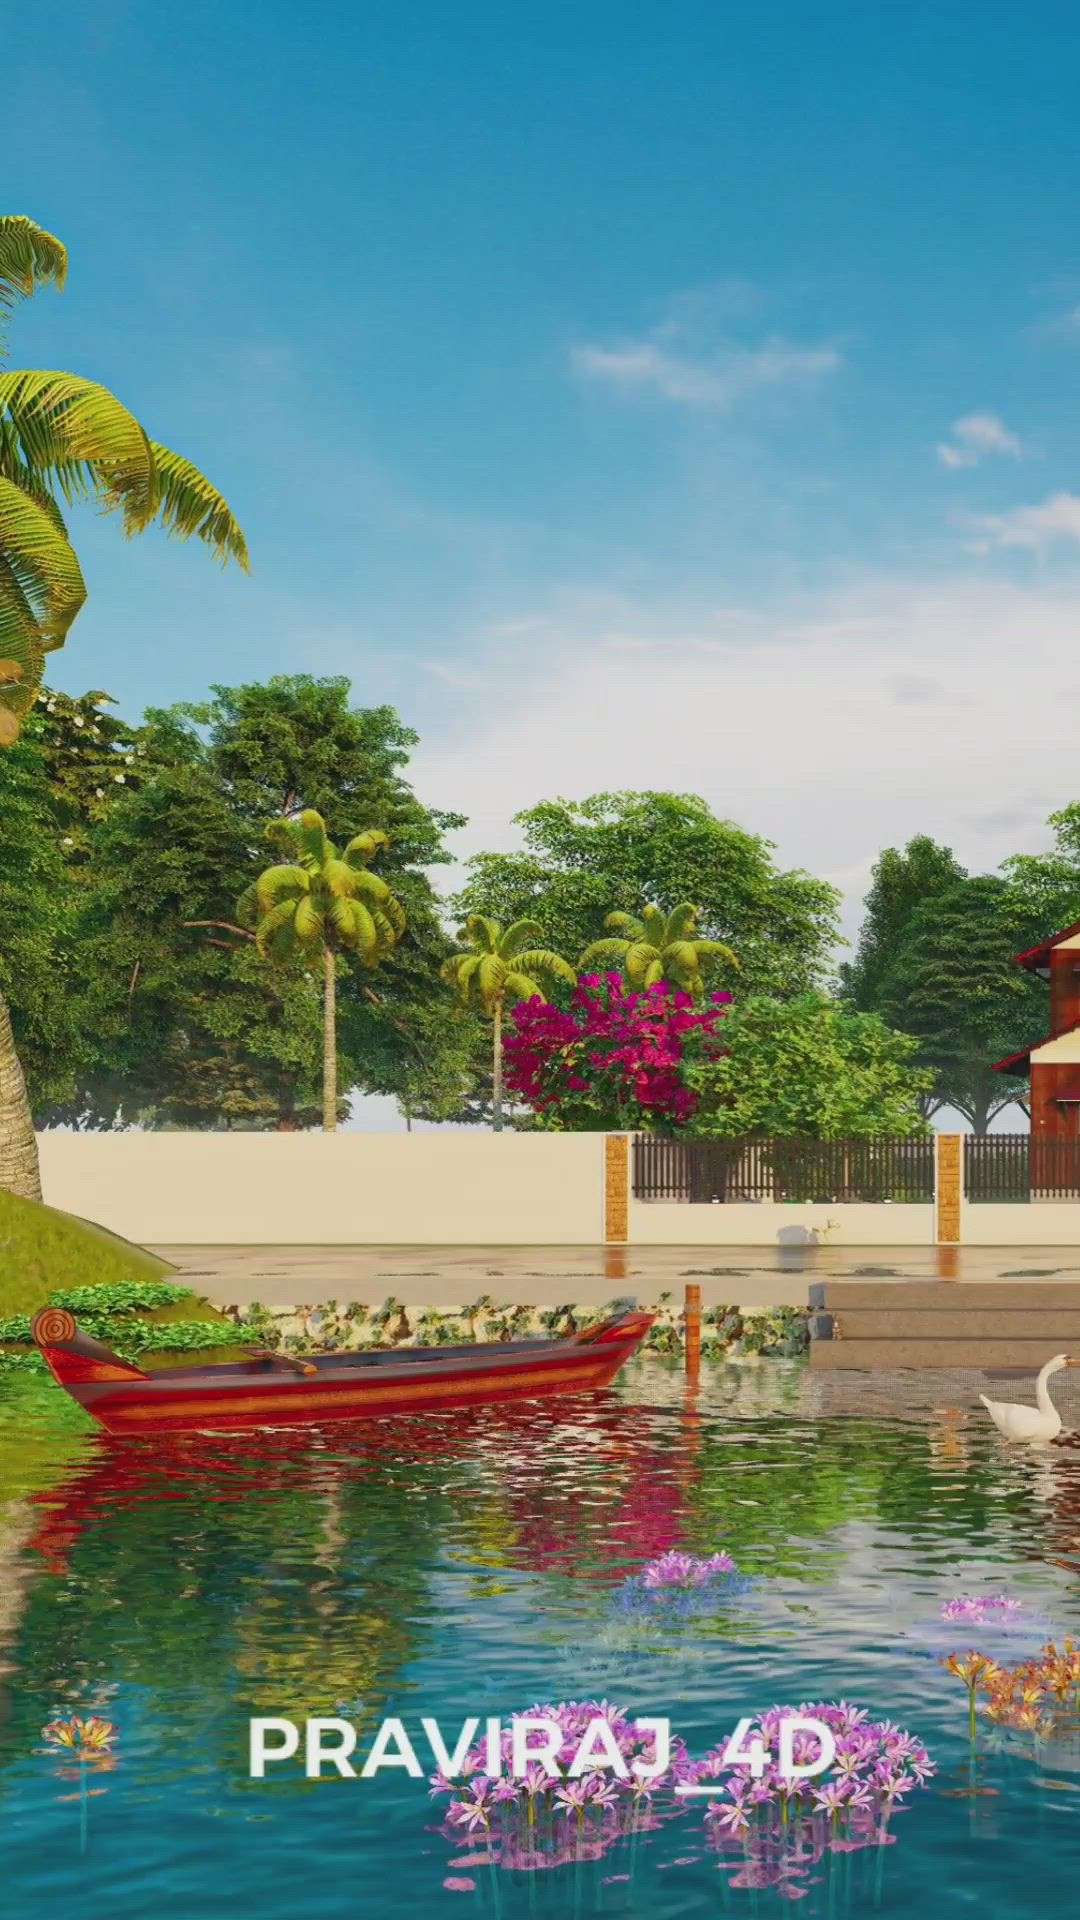 പുഴക്കരയിലെ വീട്...❣️
.
4BHK Home design
.
.Area-1800 .sq.ft
.
Contact us to design 3D elevations for your plan
(നിങ്ങളുടെ കയ്യിലുള്ള പ്ലാൻ അനുസരിച്ചുള്ള 3D_ഡിസൈൻ ചെയ്യാൻ contact ചെയ്യൂ.. )
👉📱: 8921402392
👉📧: praviraj4d@gmail.com
.
.
.
 #KeralaStyleHouse  #keralastyle  #keralaarchitectures  #4BHKHouse  #new_home  #riverside  #naturehome  #naturefriendlydesign  #keralahomeplans  #homedesignideas